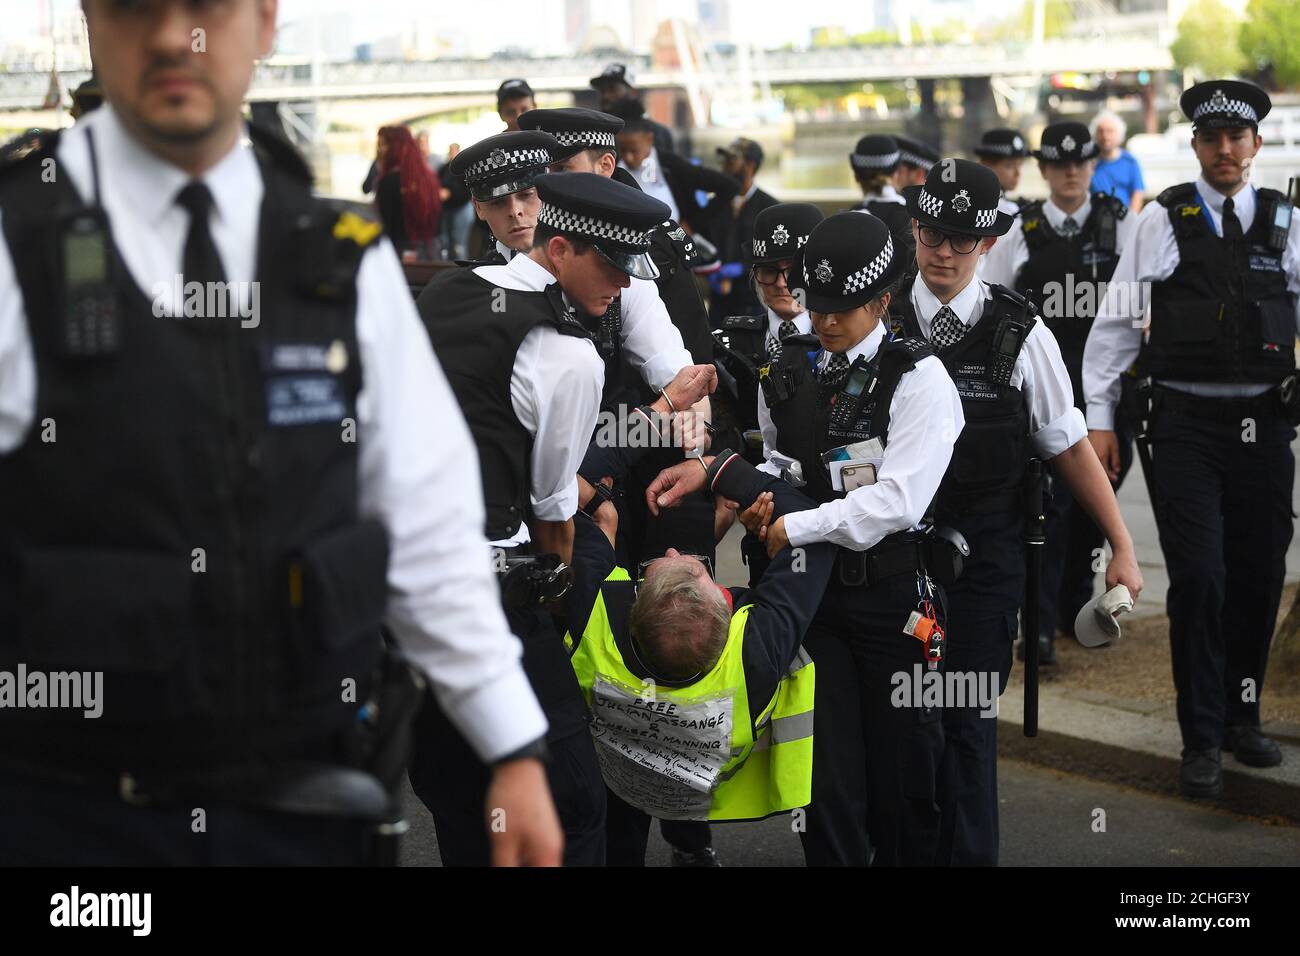 Ein Mann wird von Polizisten bei einem Protest gegen die Blockade von Covid-19 vor dem New Scotland Yard in London mitgenommen. Stockfoto